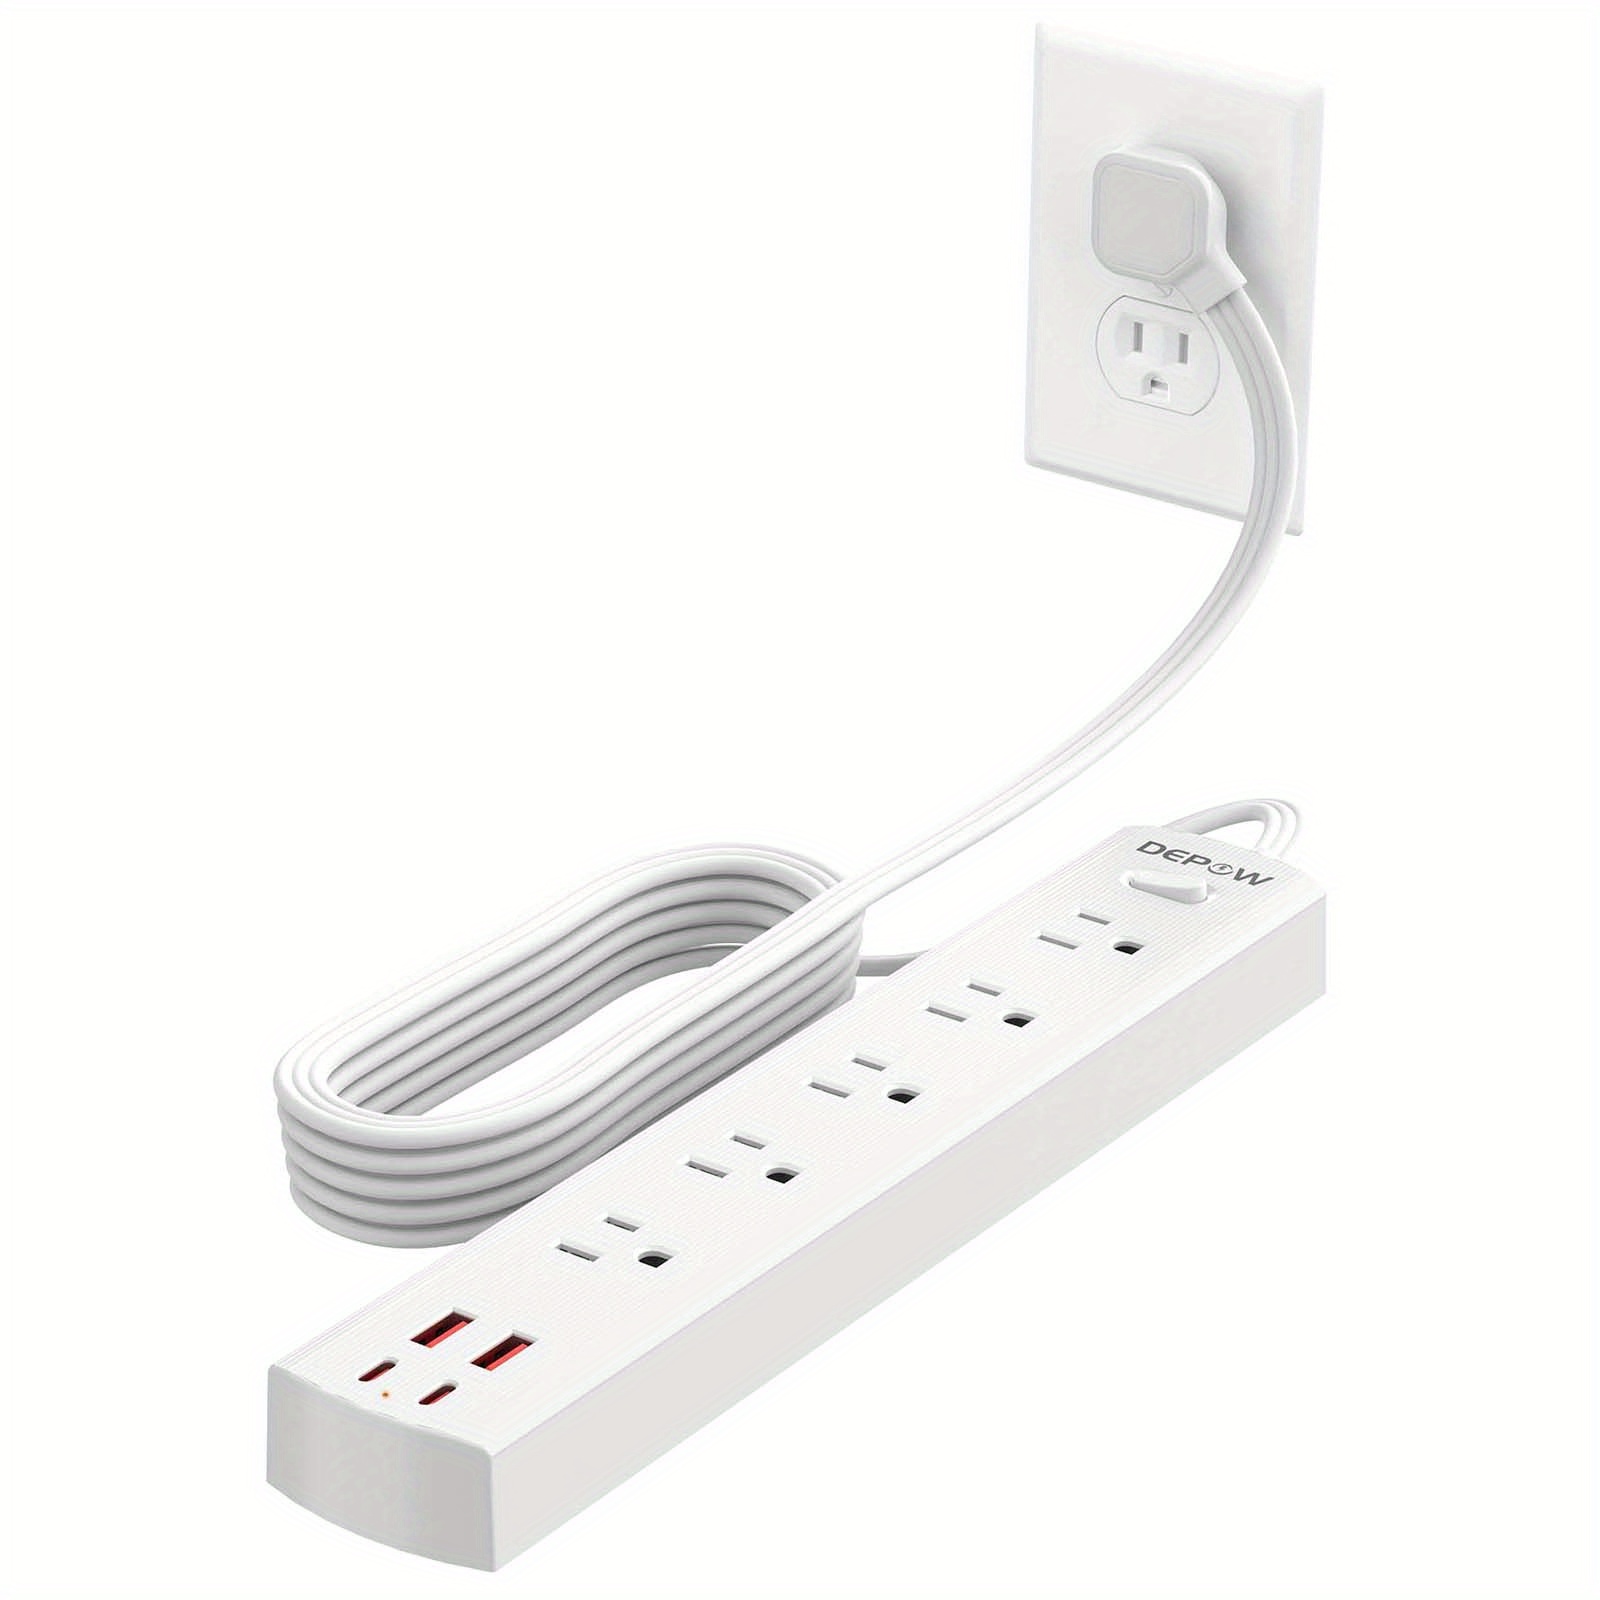 Cable de extensión con múltiples tomas, regleta de alimentación de enchufe  plano con puertos USB (2 USB C), cable de 5 pies de largo, protección